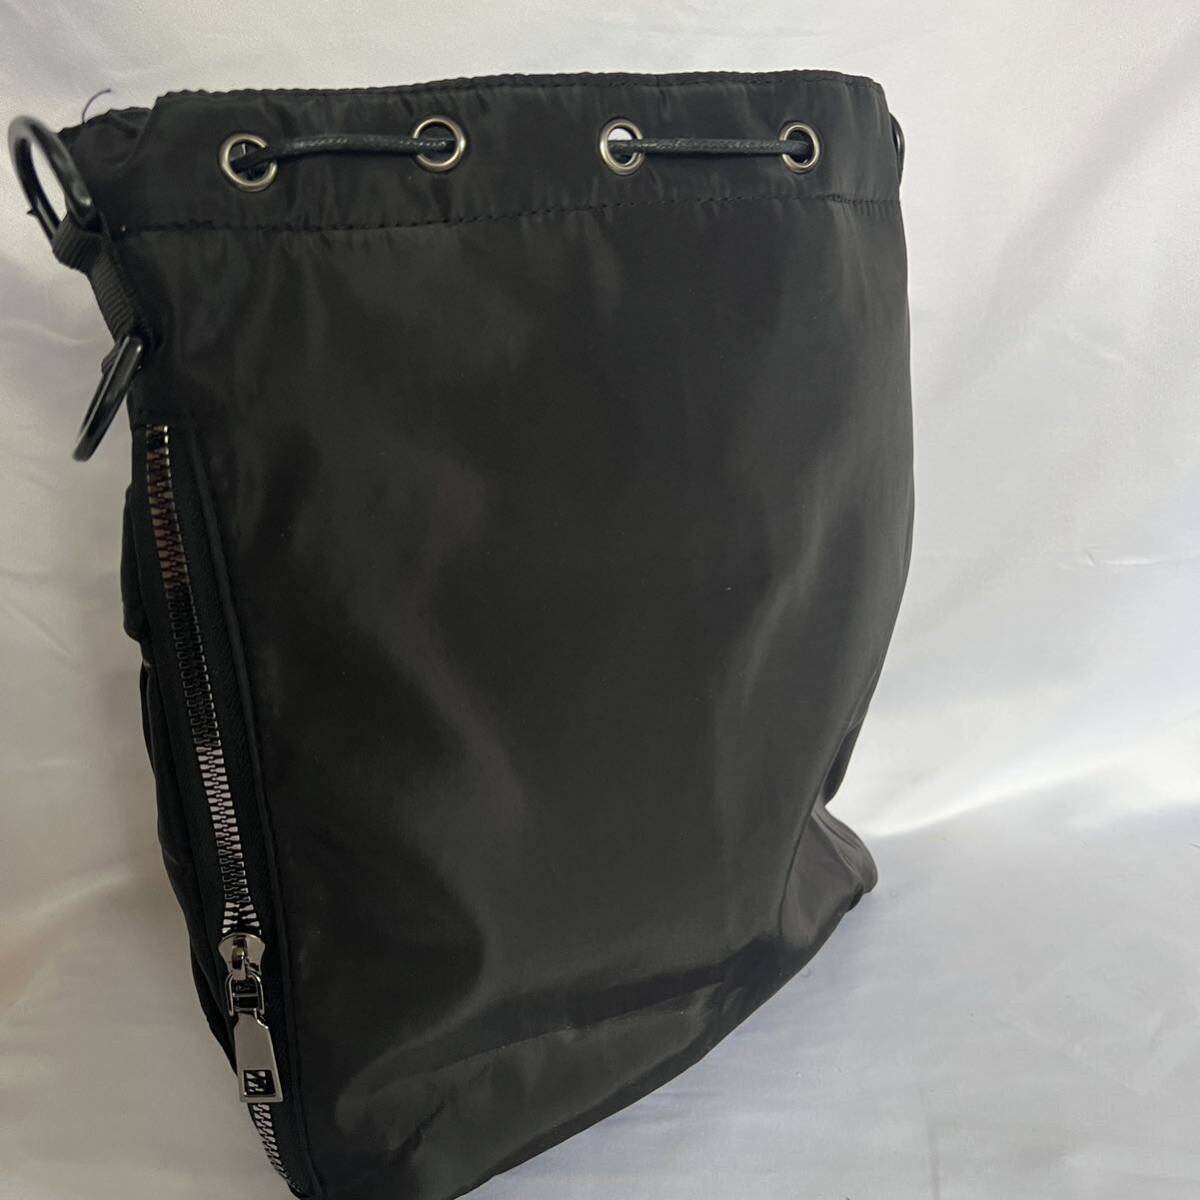 バッグ ショルダーブラック 黒 ハンドバッグ ナイロン バケツ 巾着 韓国ショルダーバッグ ブラック バッグ 大容量 ボディバッグ 黒 韓国の画像6